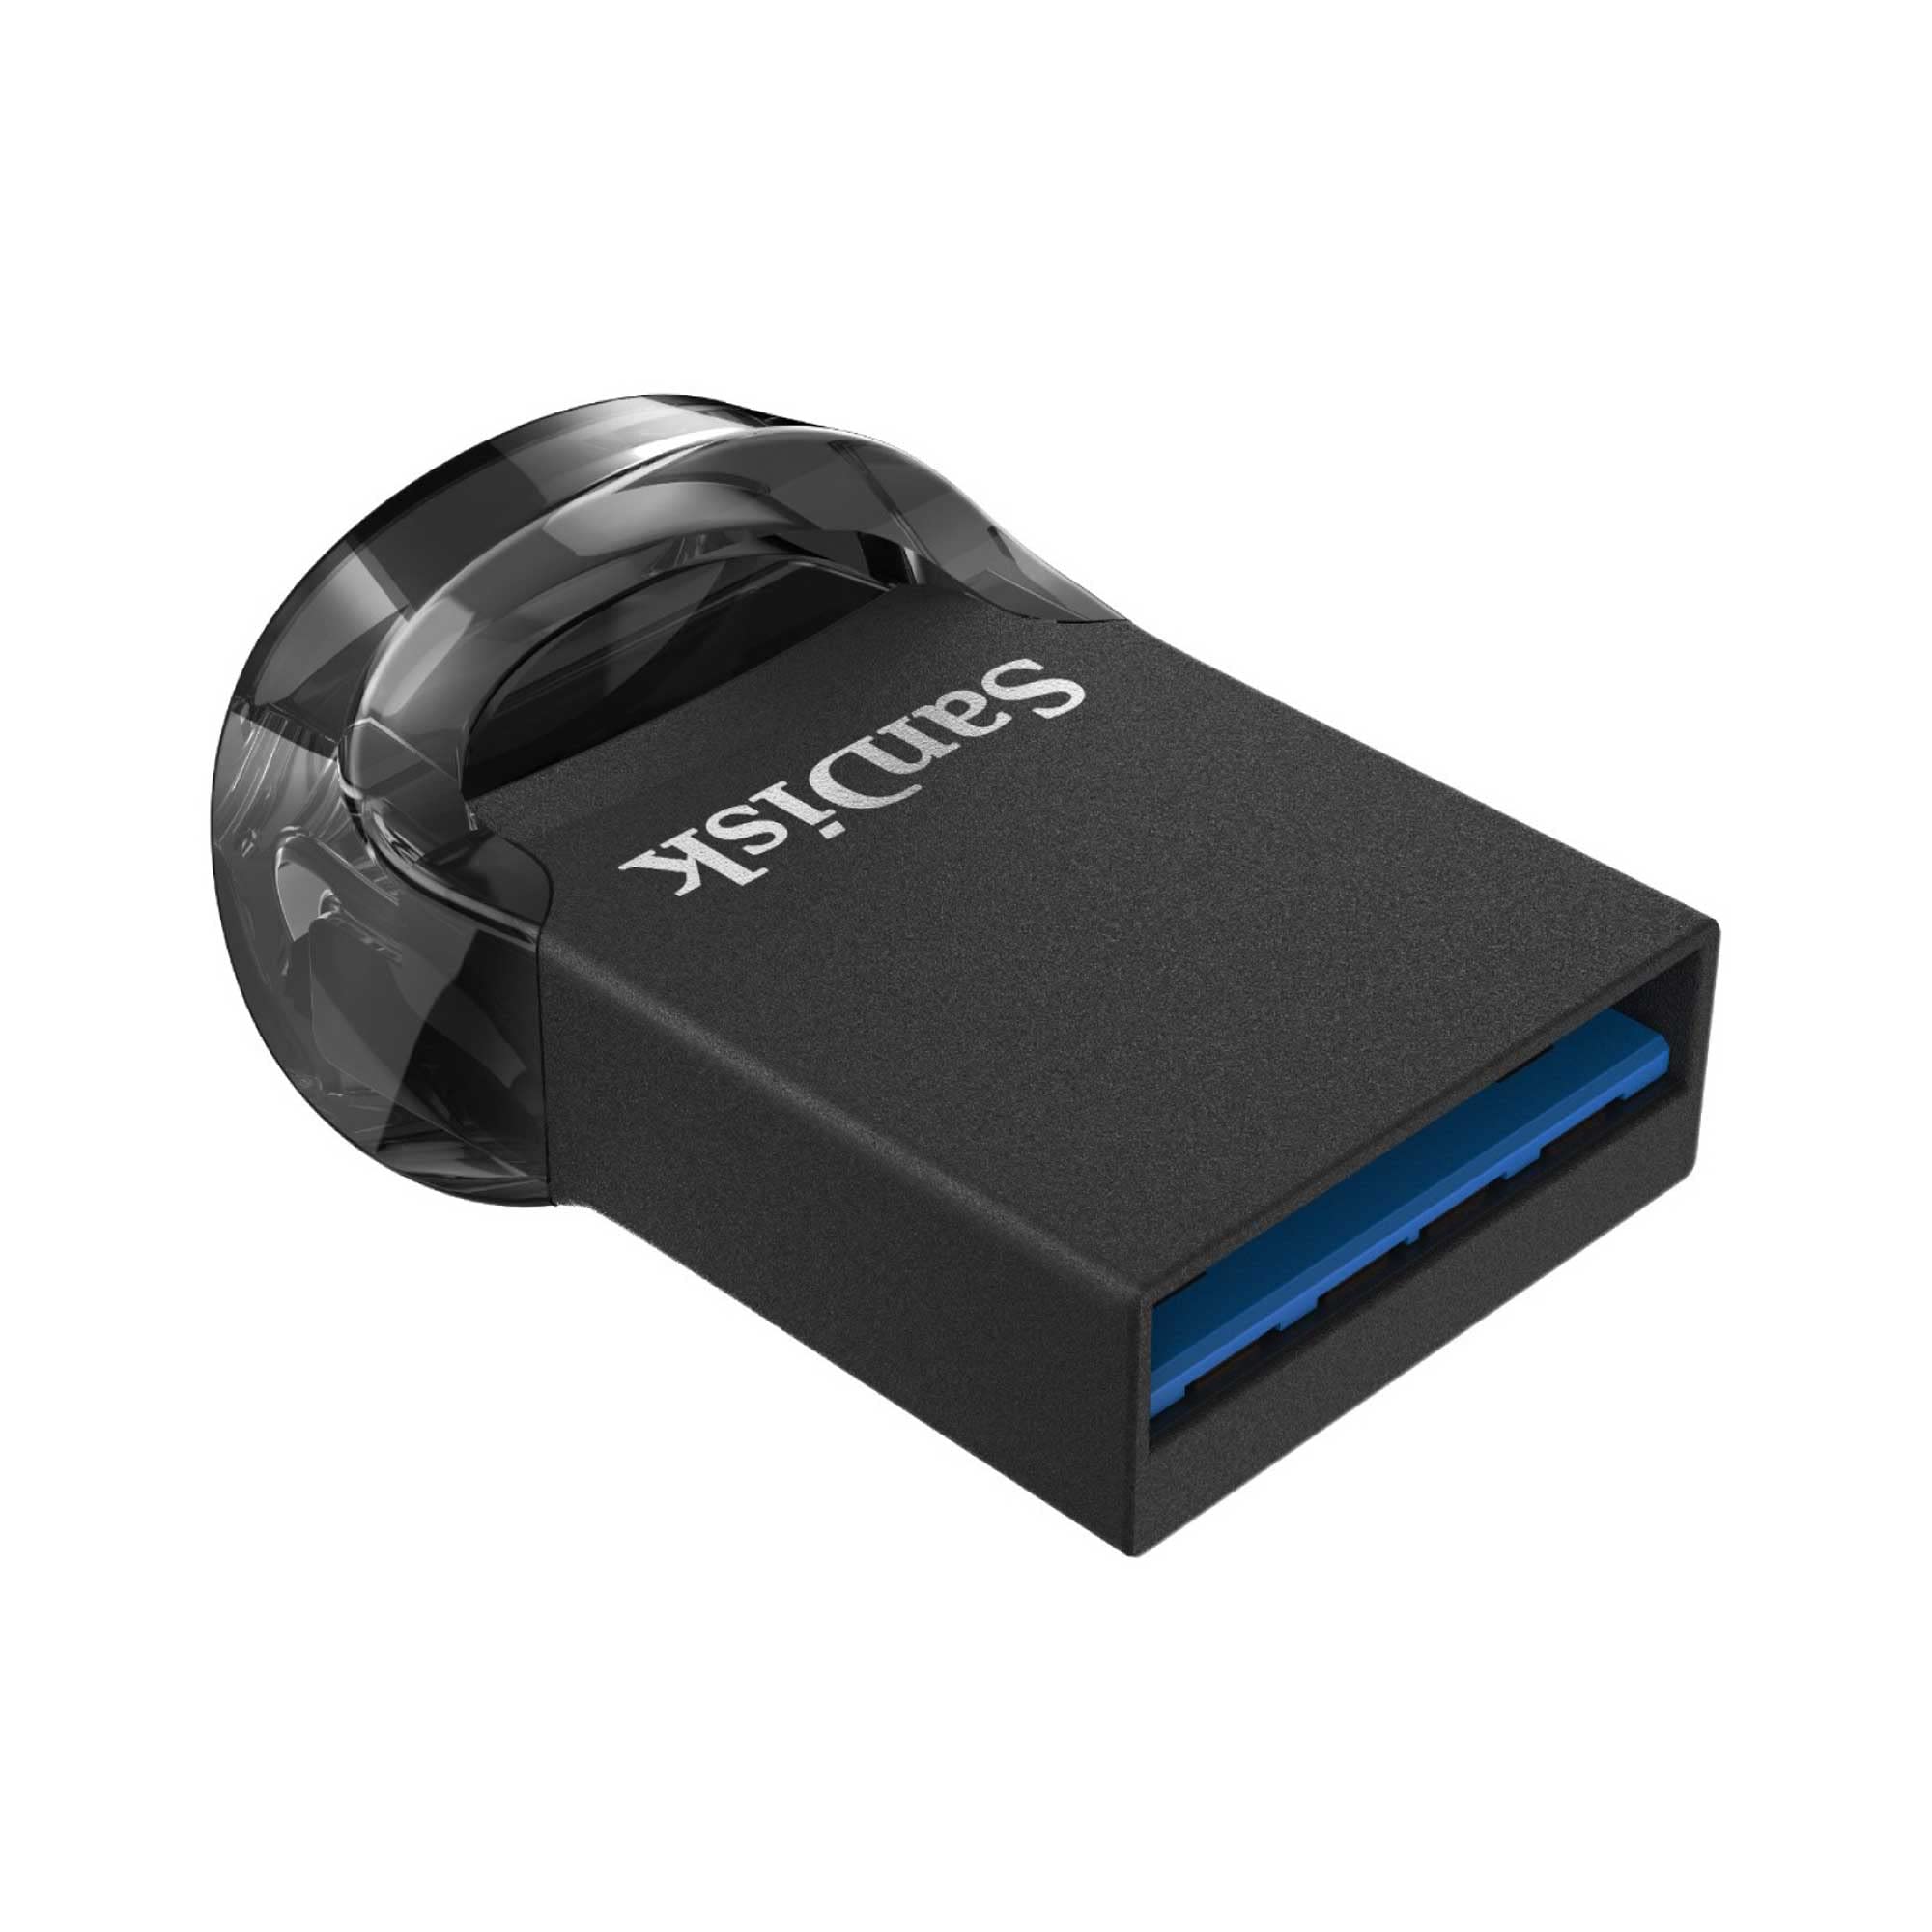 サンディスク 正規品 SanDisk メーカー5年保証 USBメモリ 32GB USB 3.2 超小型Ultra Fit 32GB SDCZ430-032G-J46 新パッケージ